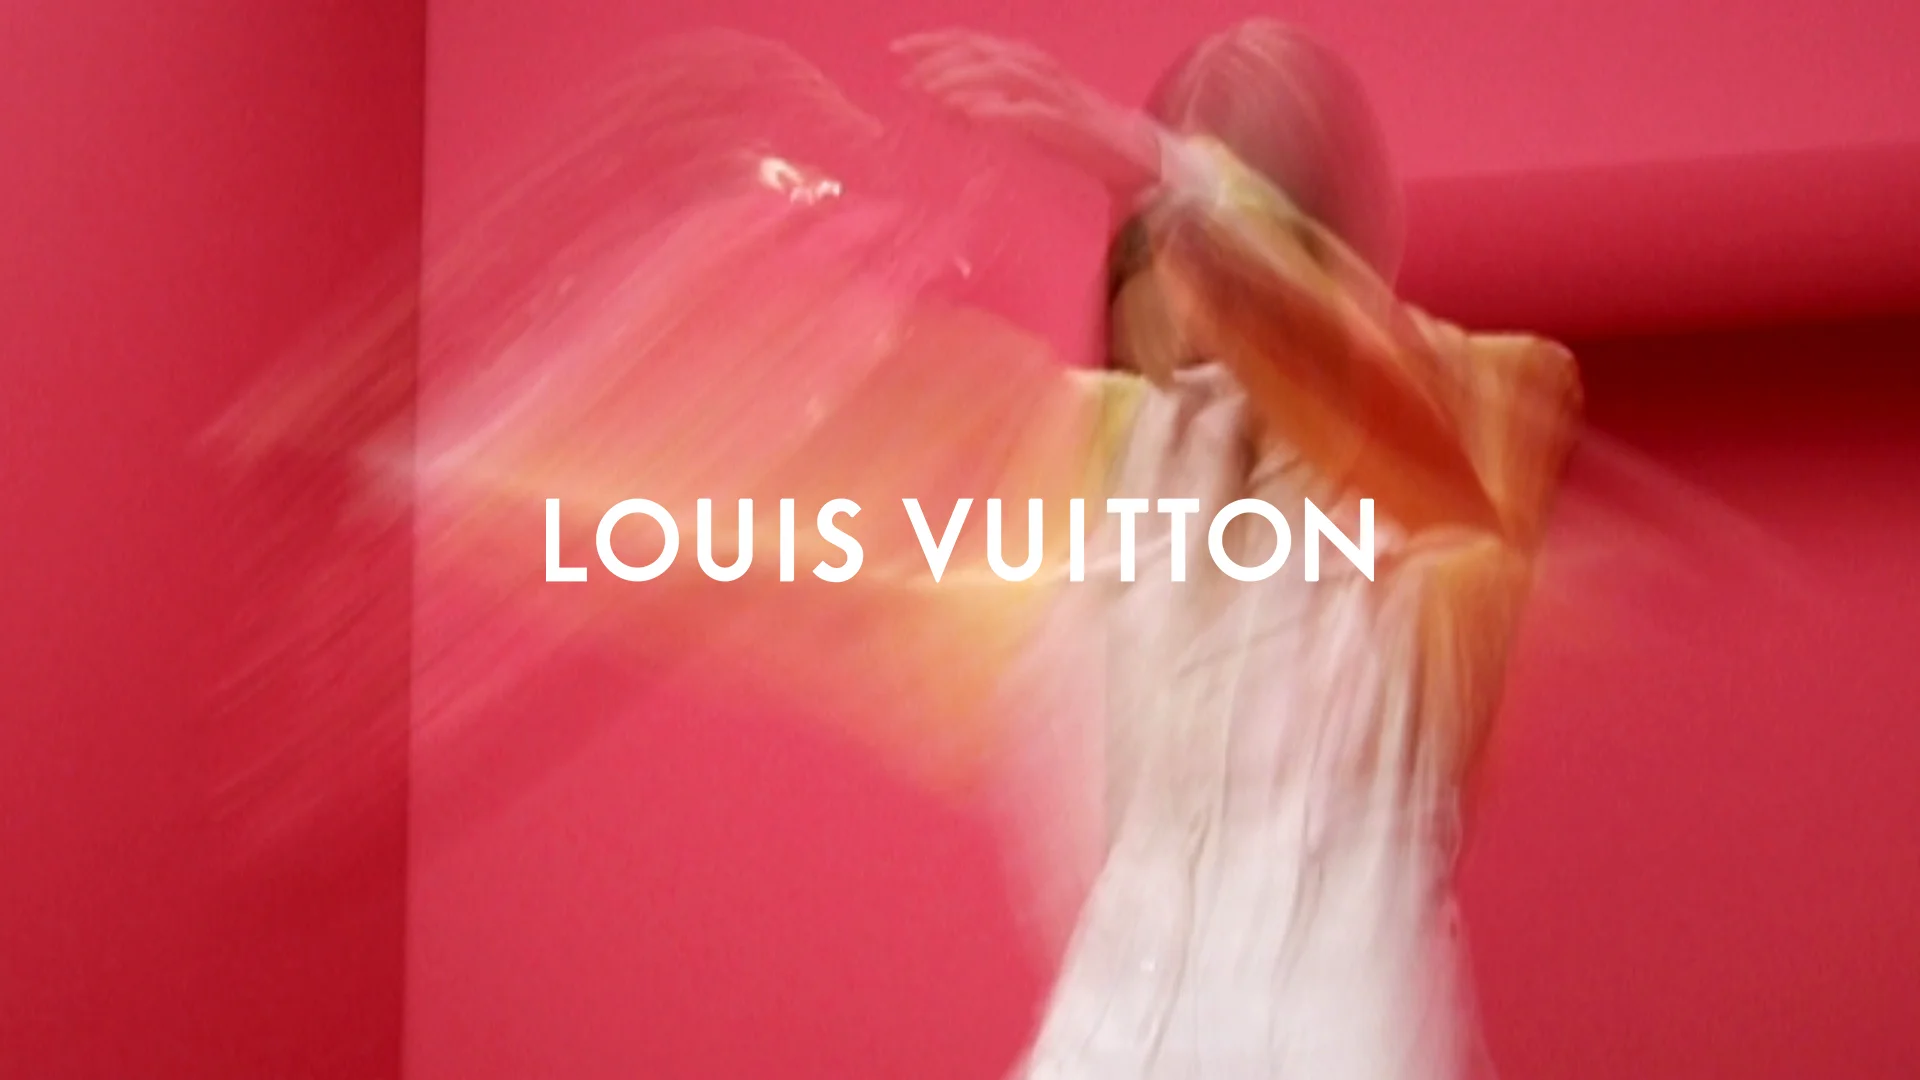 Louis Vuitton BUBBLEGRAM Campaign 2022 (Louis Vuitton)